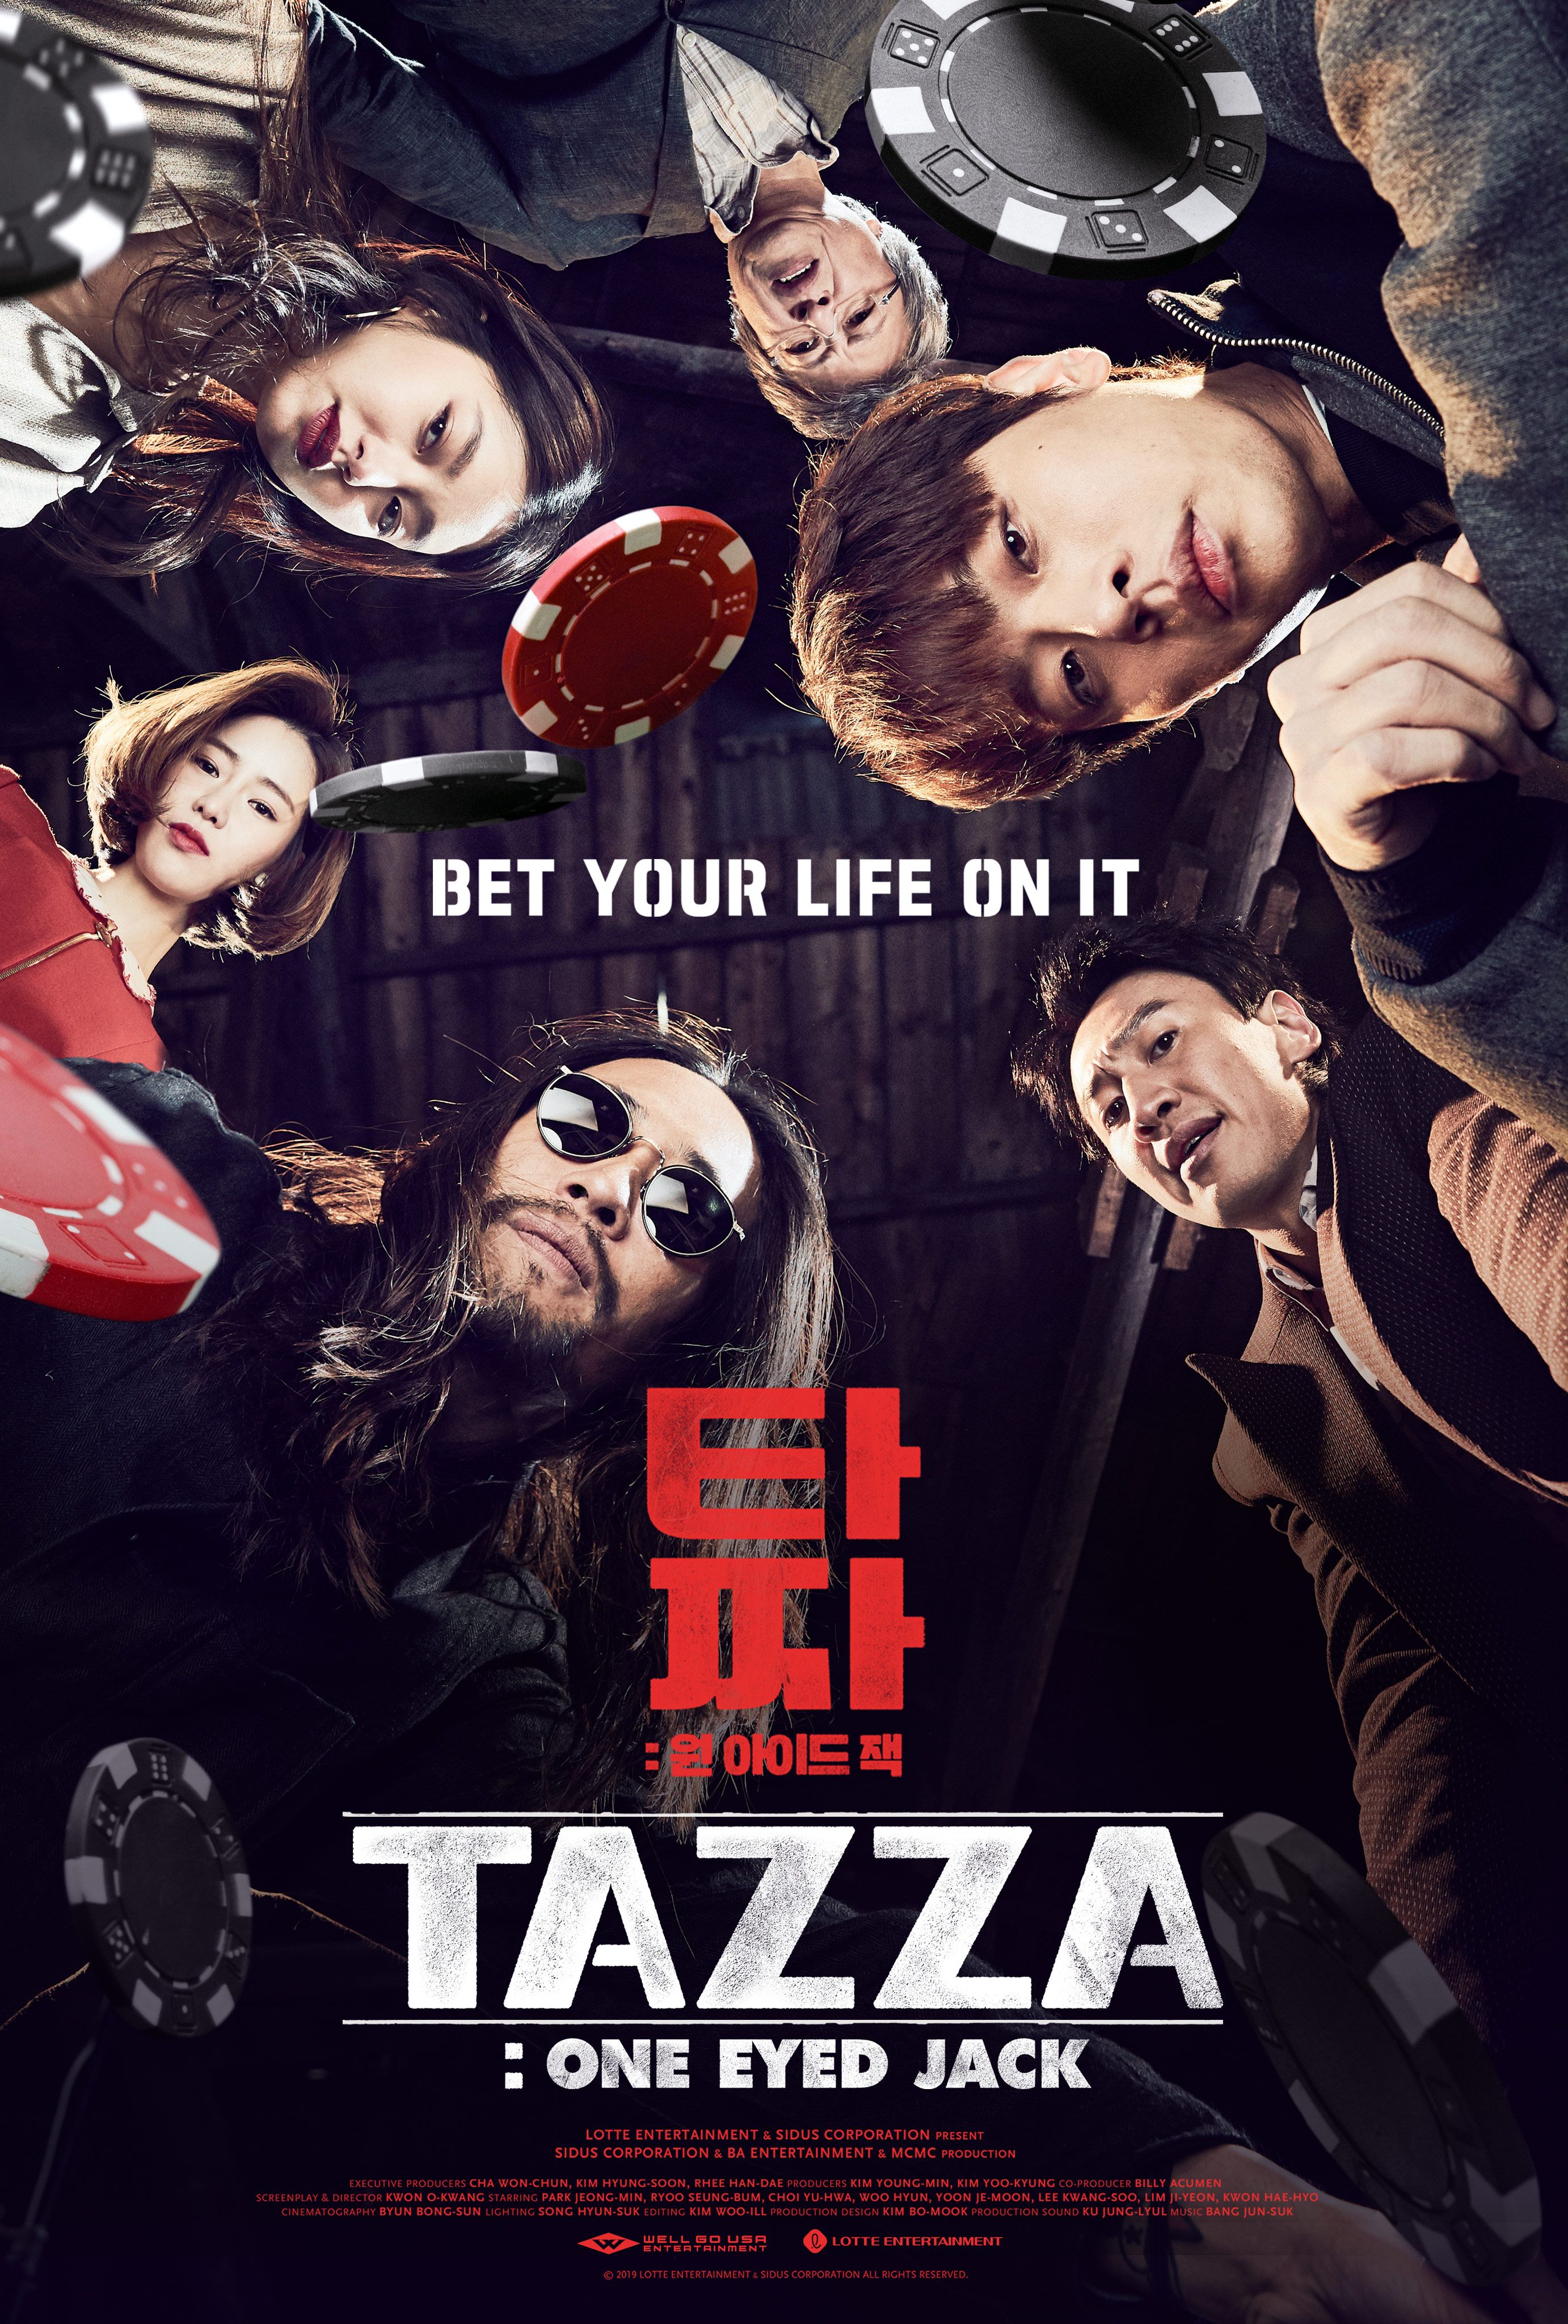 Tazza One Eyed Jack (2019) Hindi Dubbed Full Movie